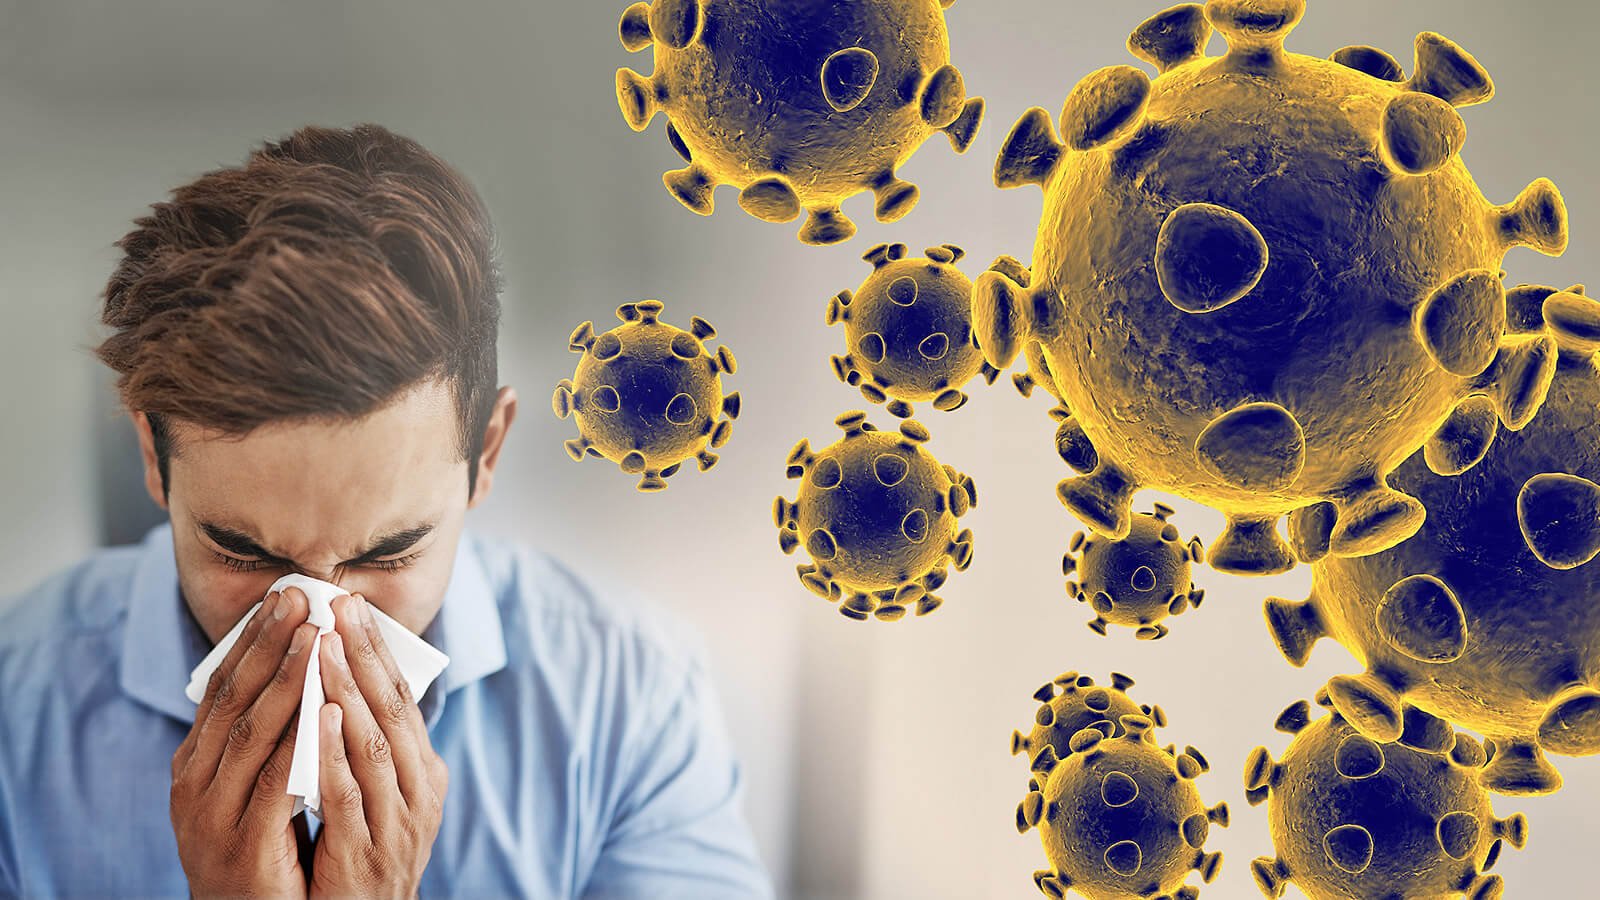 Coronavirus: alles, was wir wissen im Moment